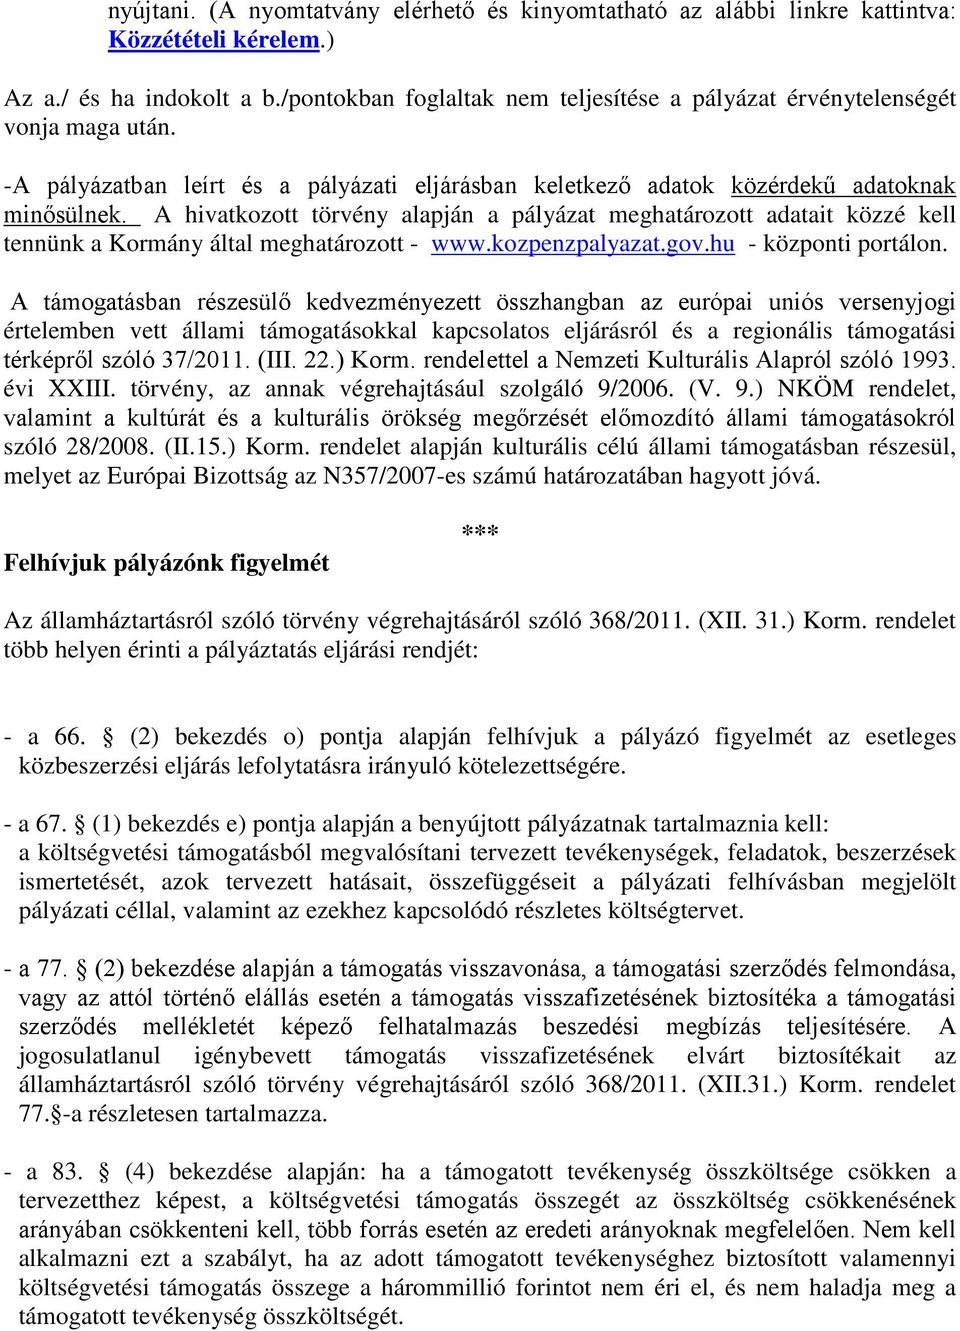 A hivatkztt törvény alapján a pályázat meghatárztt adatait közzé kell tennünk a Krmány által meghatárztt - www.kzpenzpalyazat.gv.hu - közpnti prtáln.